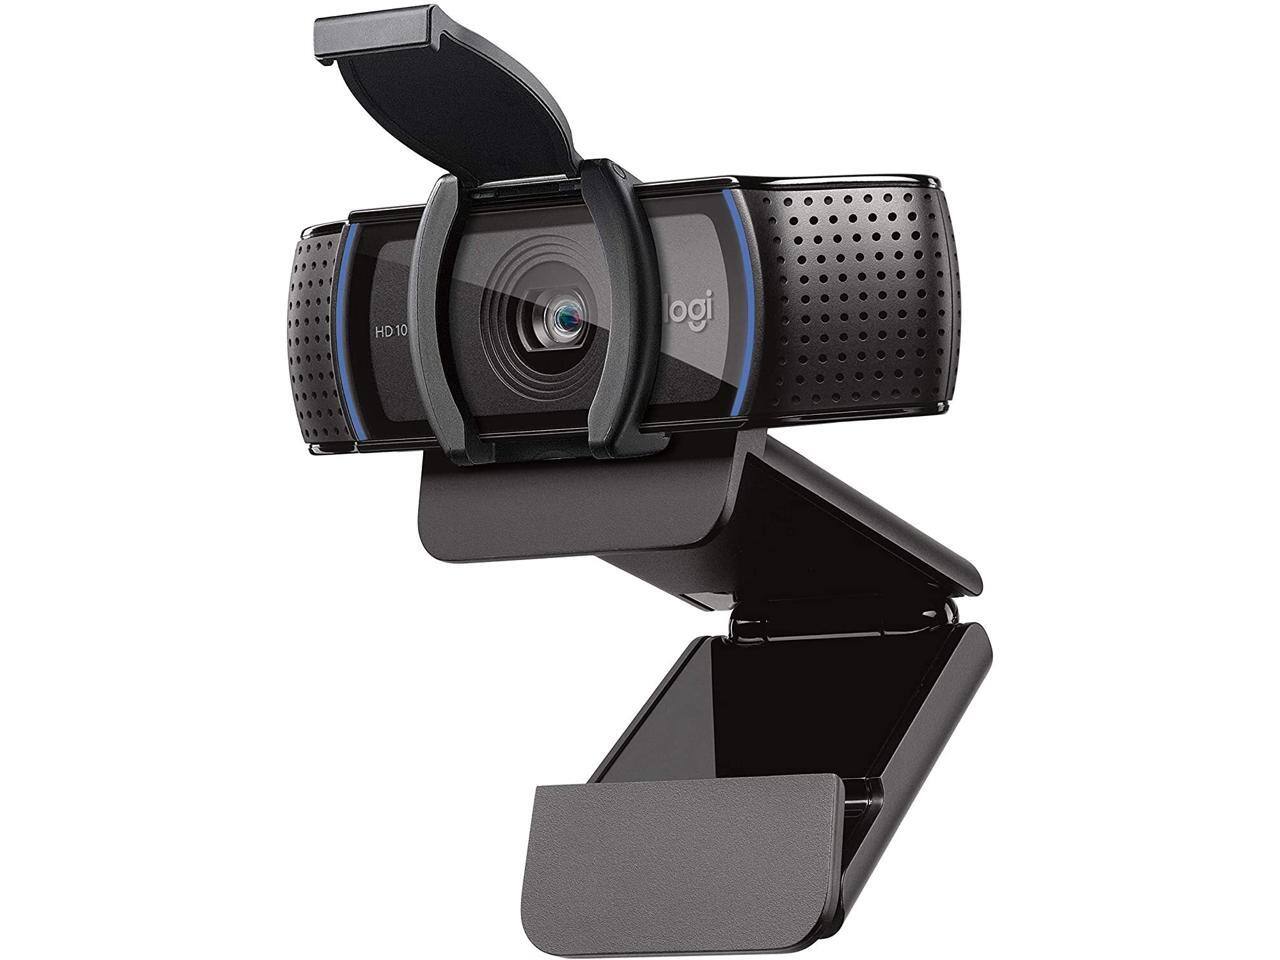 Logitech C920e 1080p HD Business Webcam $53.99